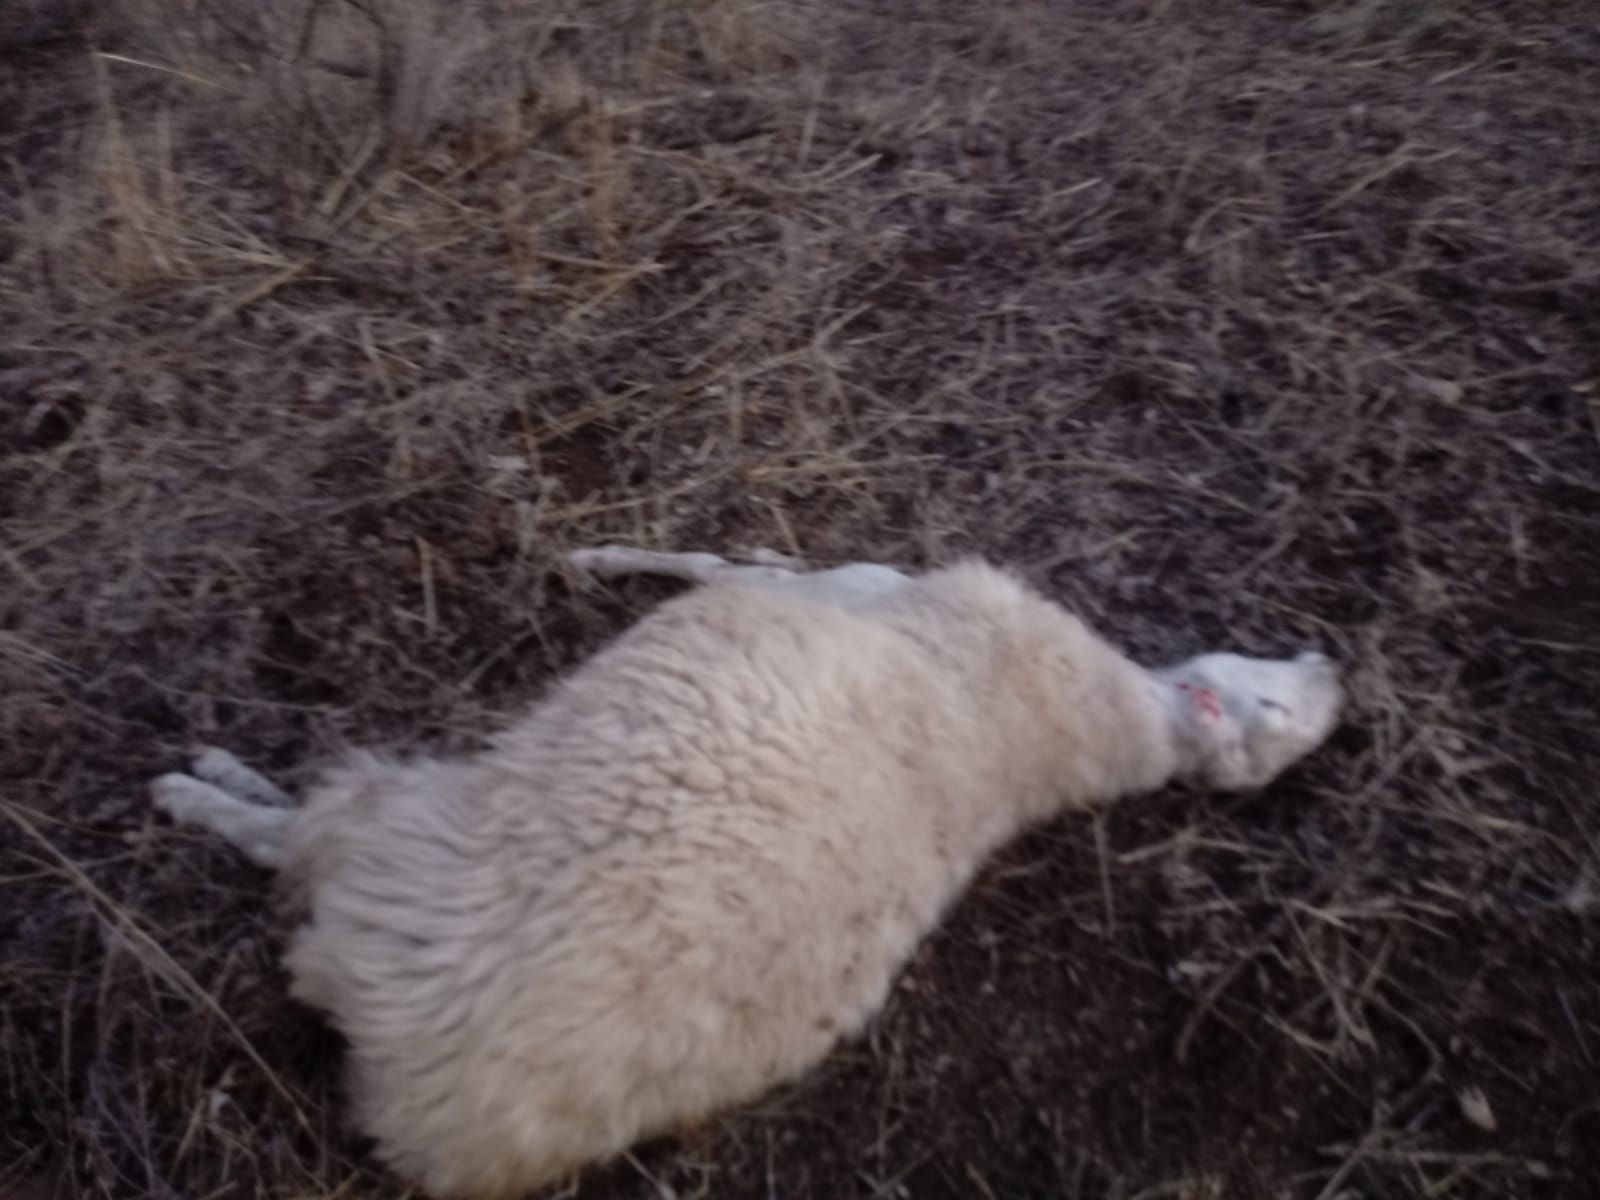 Los lobos matan a nueve ovejas de un rebaño en un mismo ataque ante la indefensión del ganadero